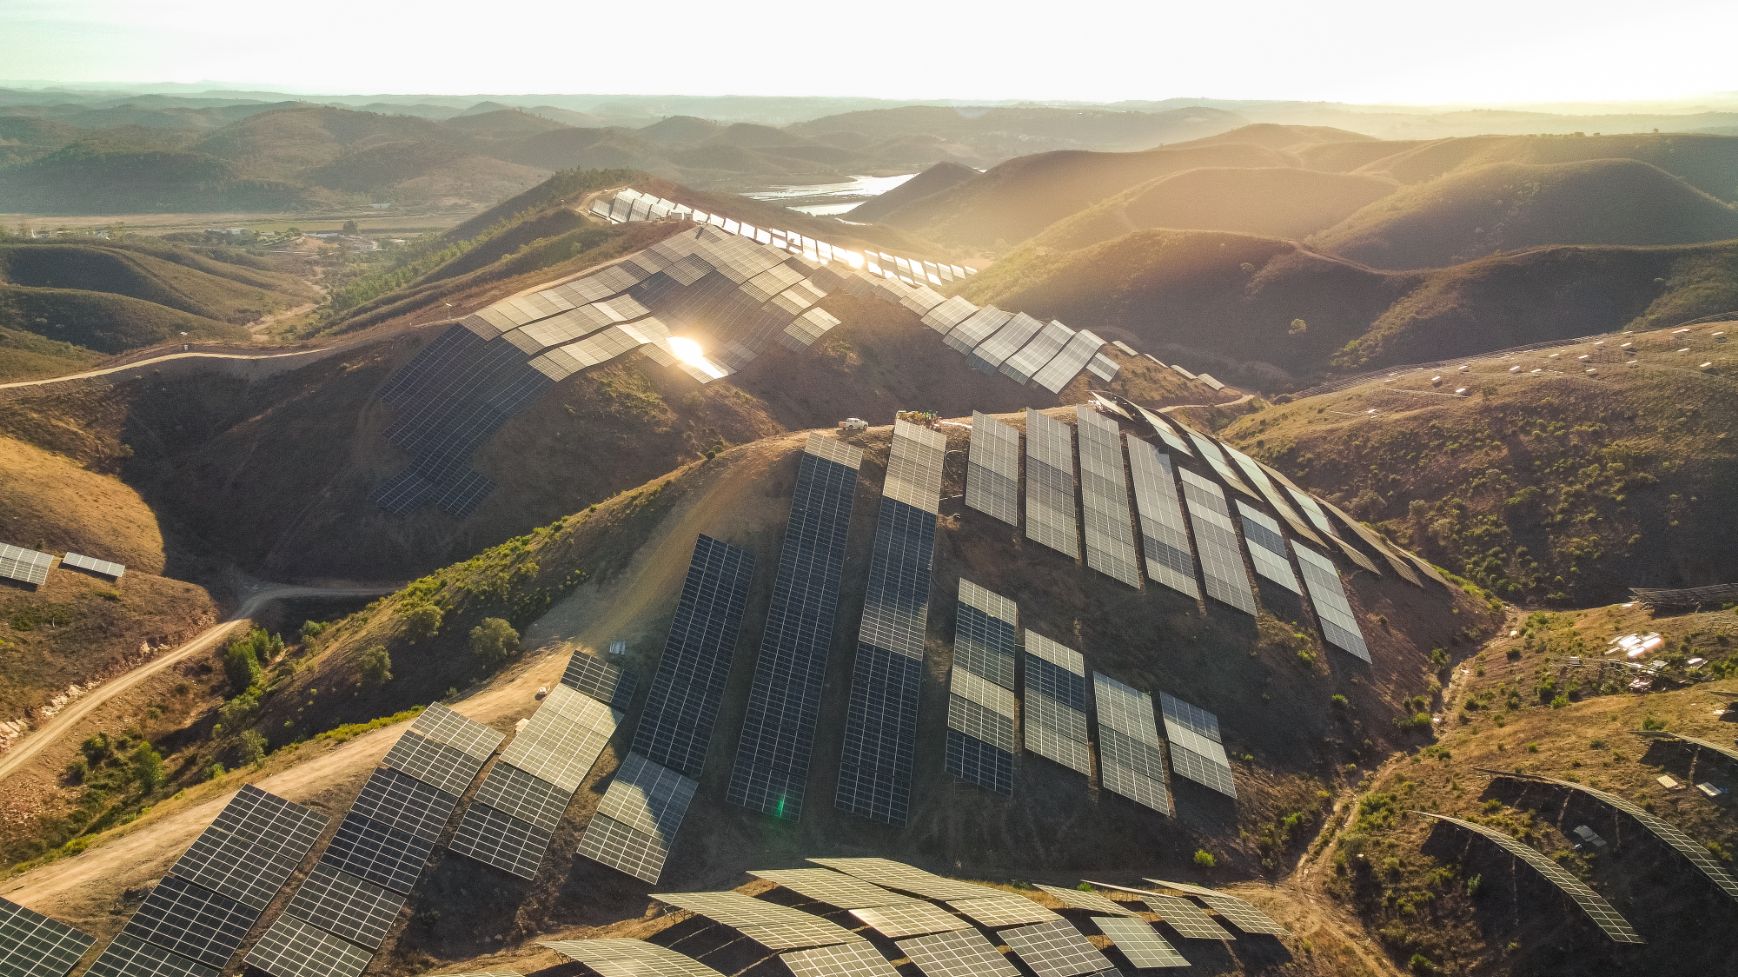 Central Fotovoltaica construída pela Voltalia fornece energia a mais de 7600 habitações